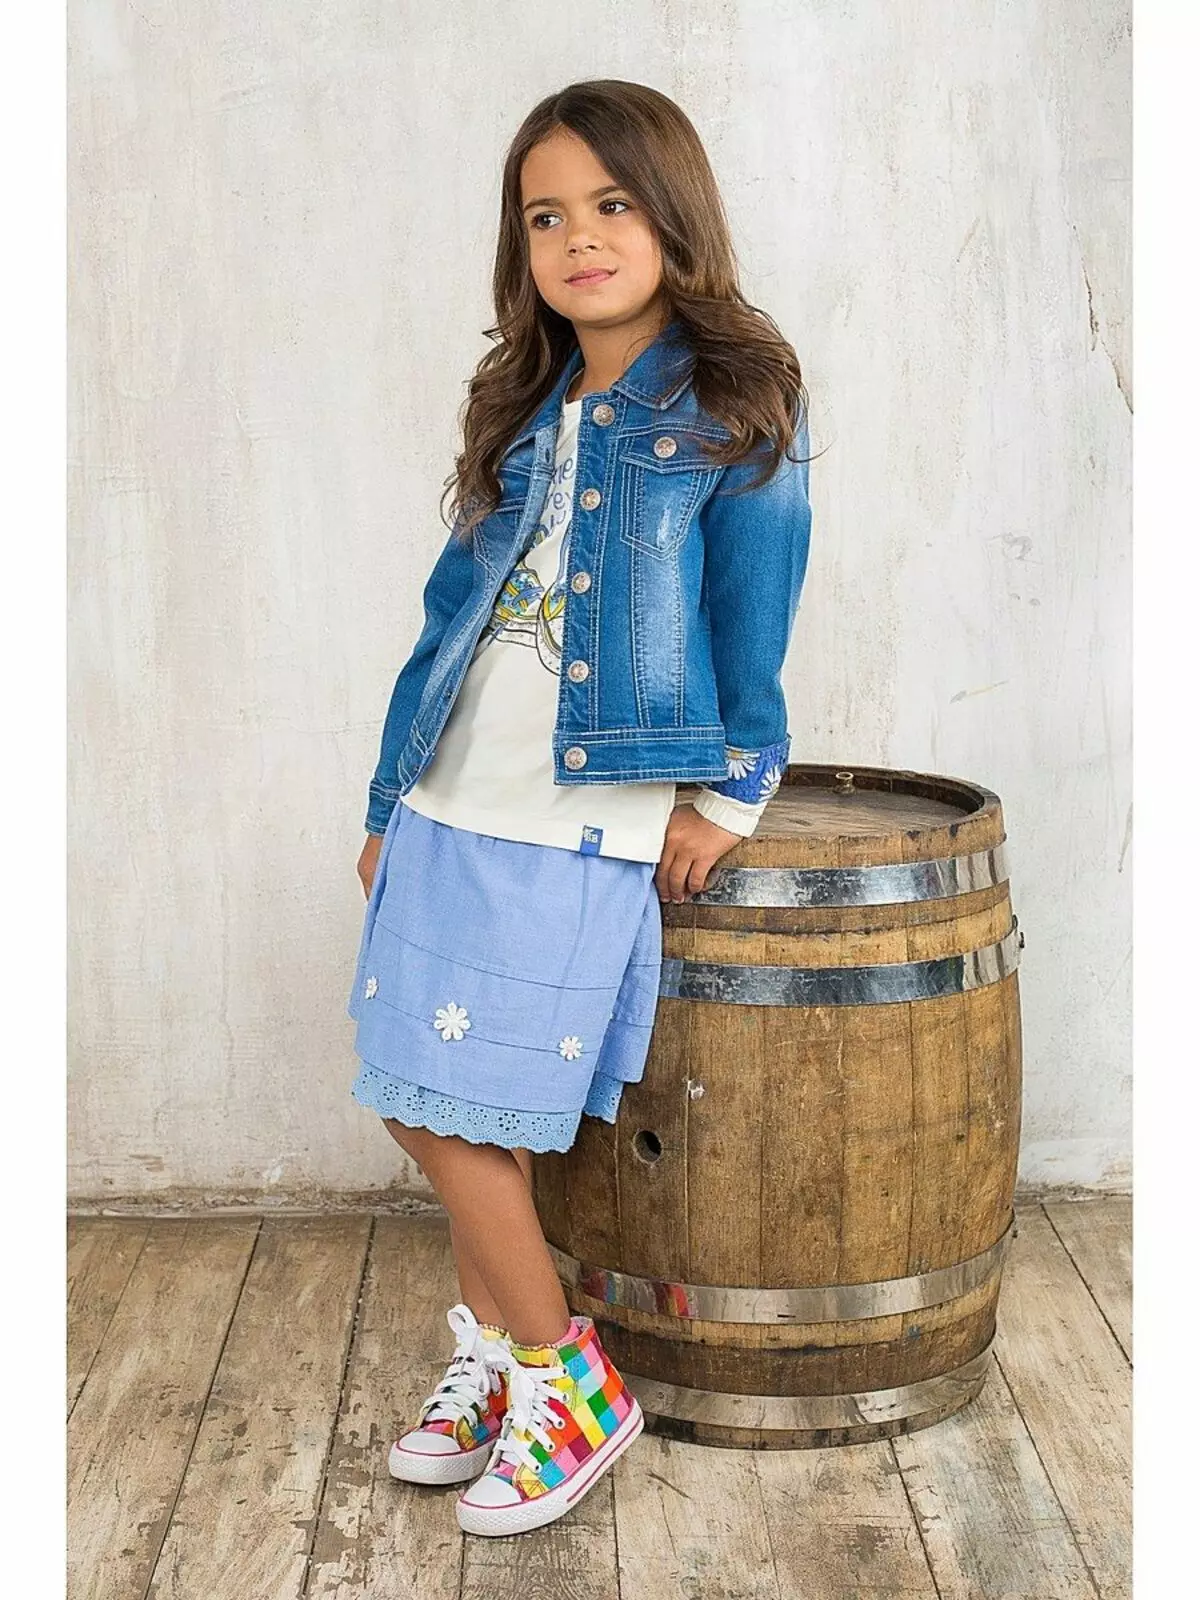 소녀를위한 어린이 데님 재킷 (49) 사진 : 착용 할 것, 낡은 청바지의 패턴 14394_26